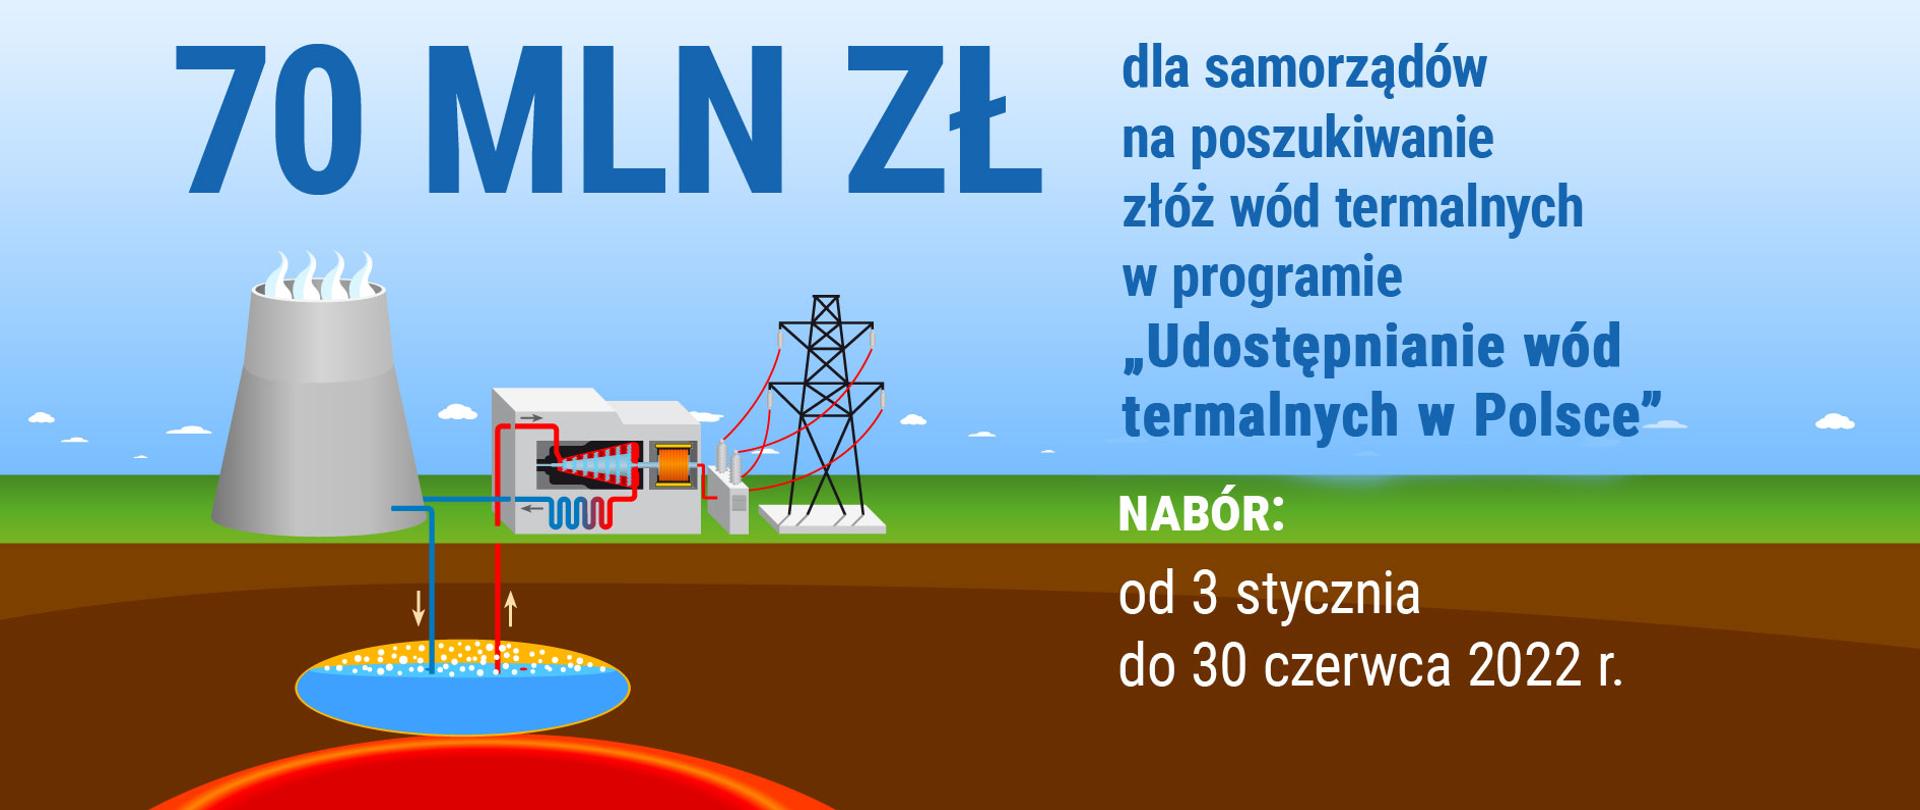 Grafika - 70 mln zł dla samorządów na poszukiwanie złóż wód termalnych w programie "Udostępnianie wód termalnych w Polsce"